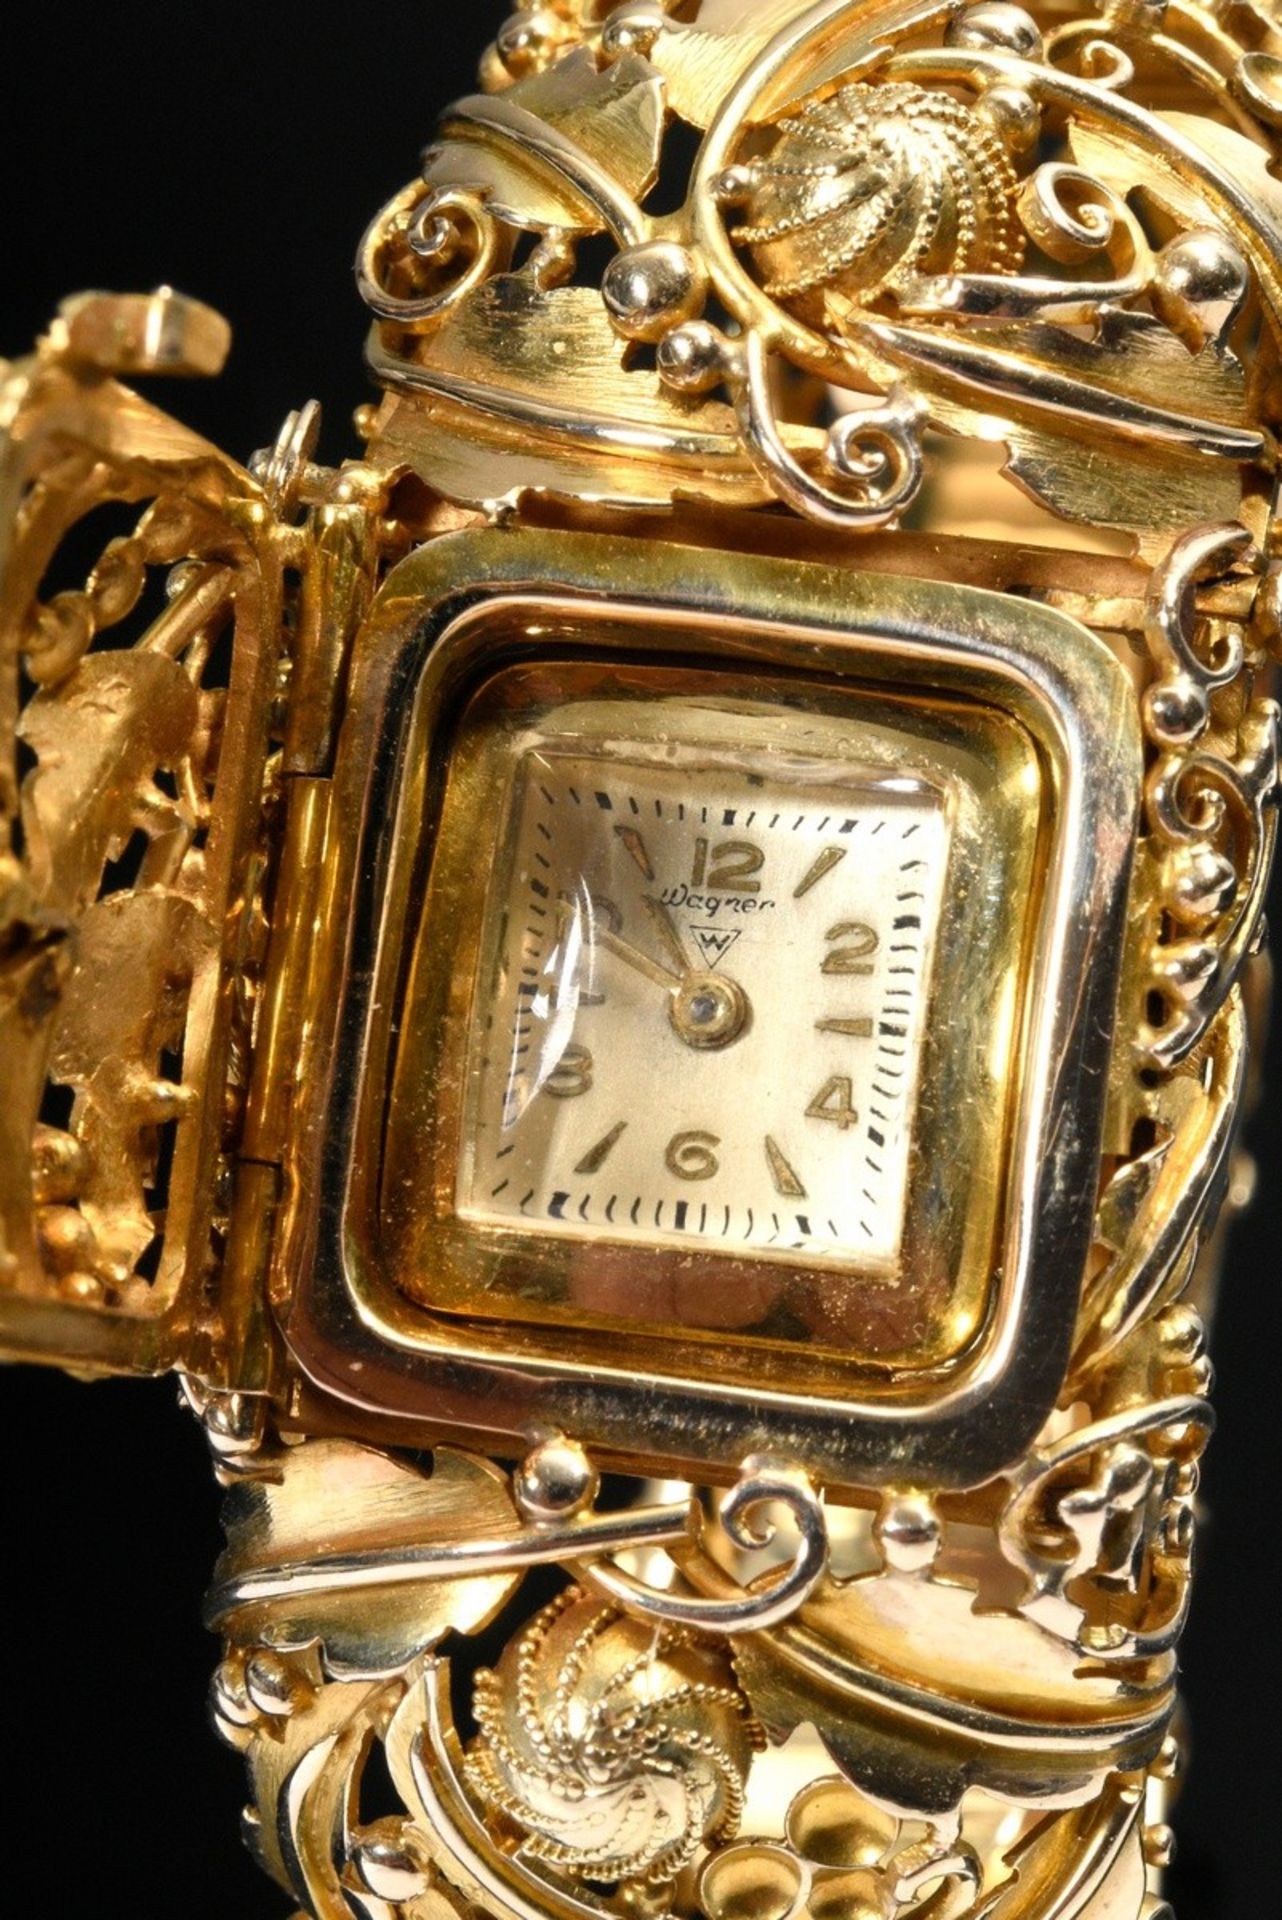 Ovale Gelbgold 585 Armspange mit versteckter Wagner Uhr unter Klappdeckel, allseitige Blatt- und Bl - Bild 3 aus 6